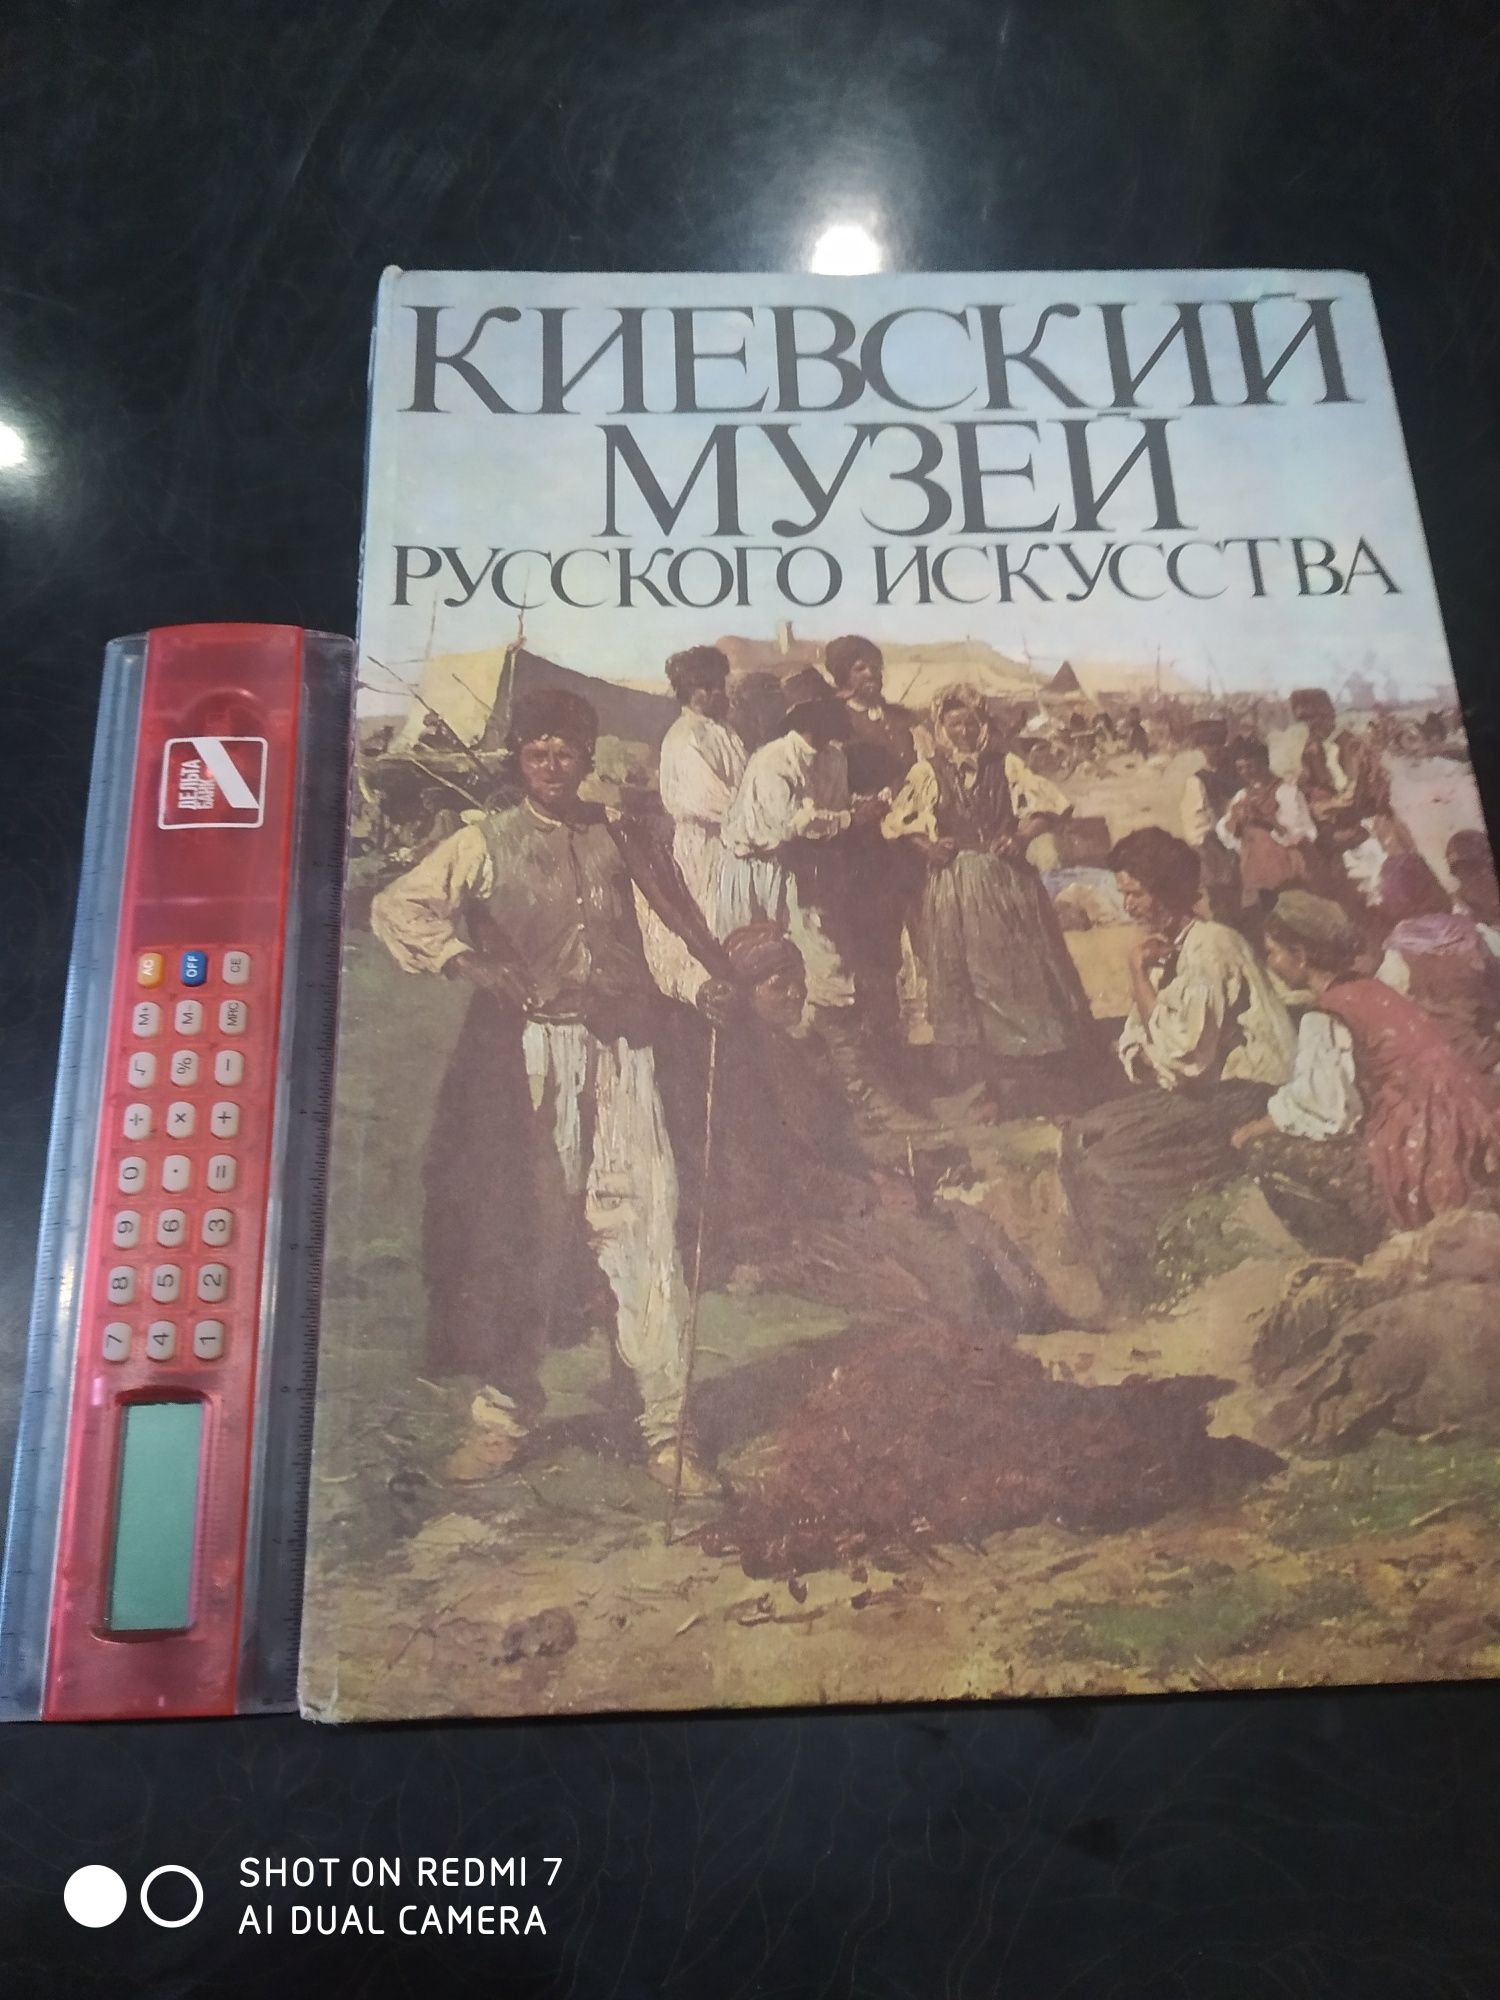 Книга,,Киевский музей,,